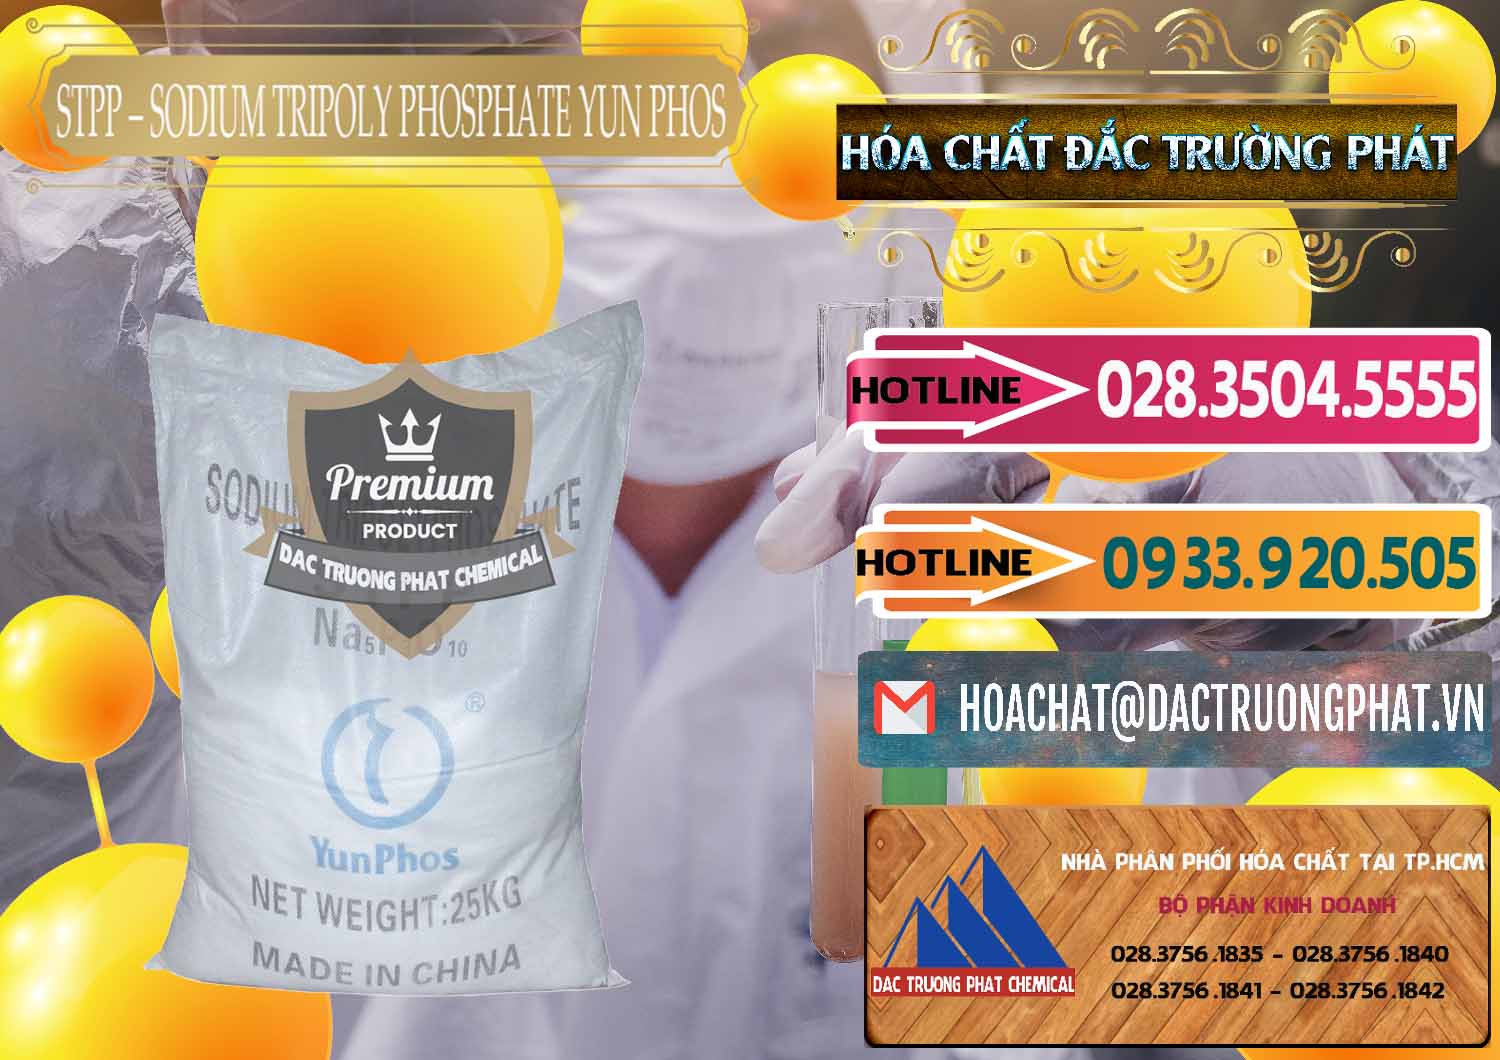 Cty bán ( phân phối ) Sodium Tripoly Phosphate - STPP Yun Phos Trung Quốc China - 0153 - Đơn vị chuyên kinh doanh - phân phối hóa chất tại TP.HCM - dactruongphat.vn